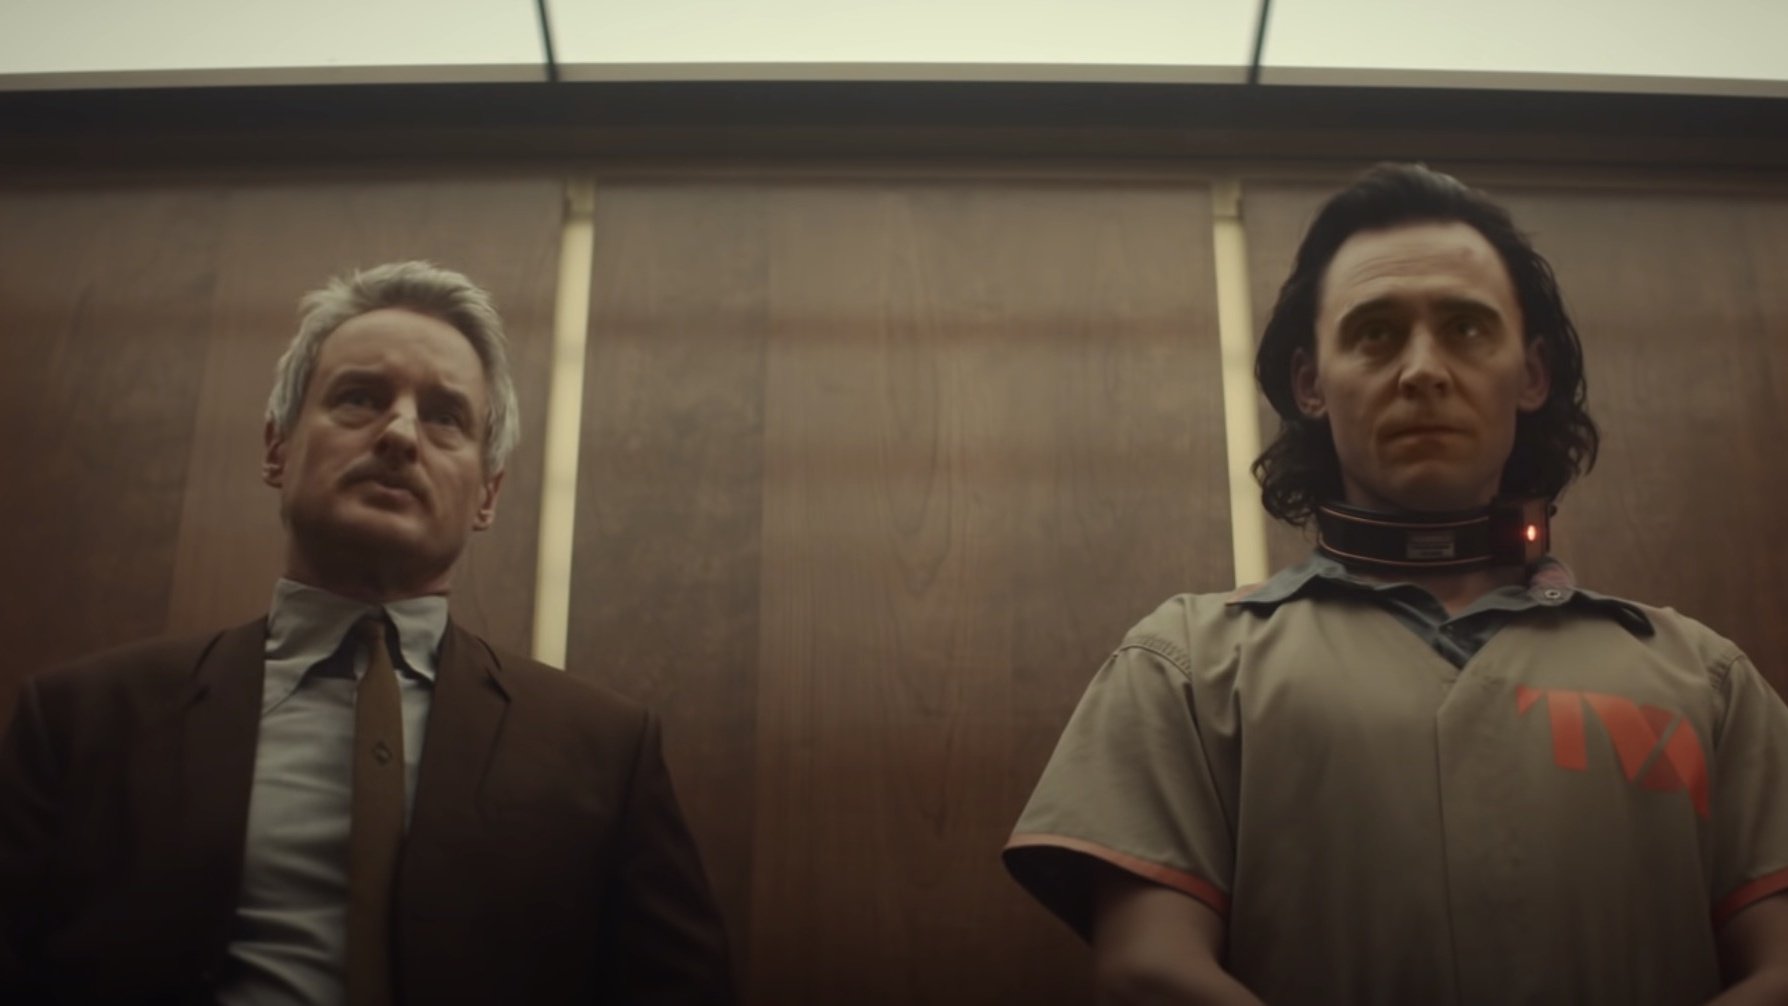 Mobius, gespielt von Owen Wilson, und Loki, gespielt von Tom Hiddleston, befanden sich in einem Aufzug.